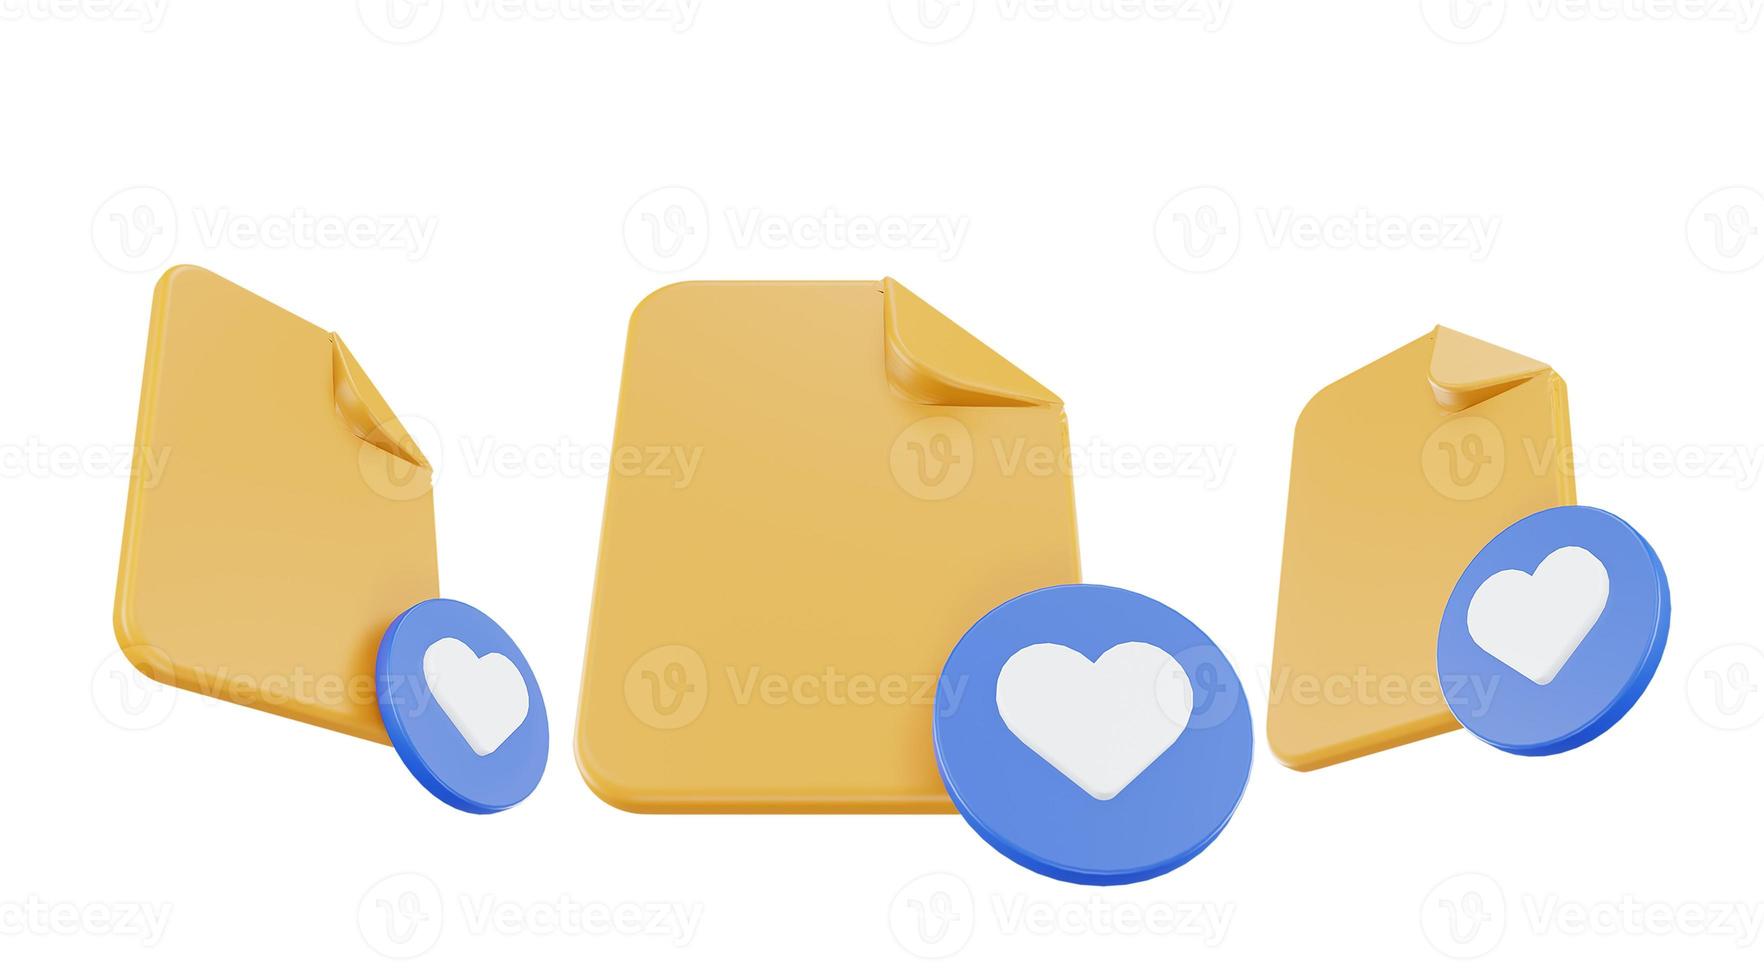 icono favorito de archivo de procesamiento 3d con papel de archivo naranja y favorito azul foto